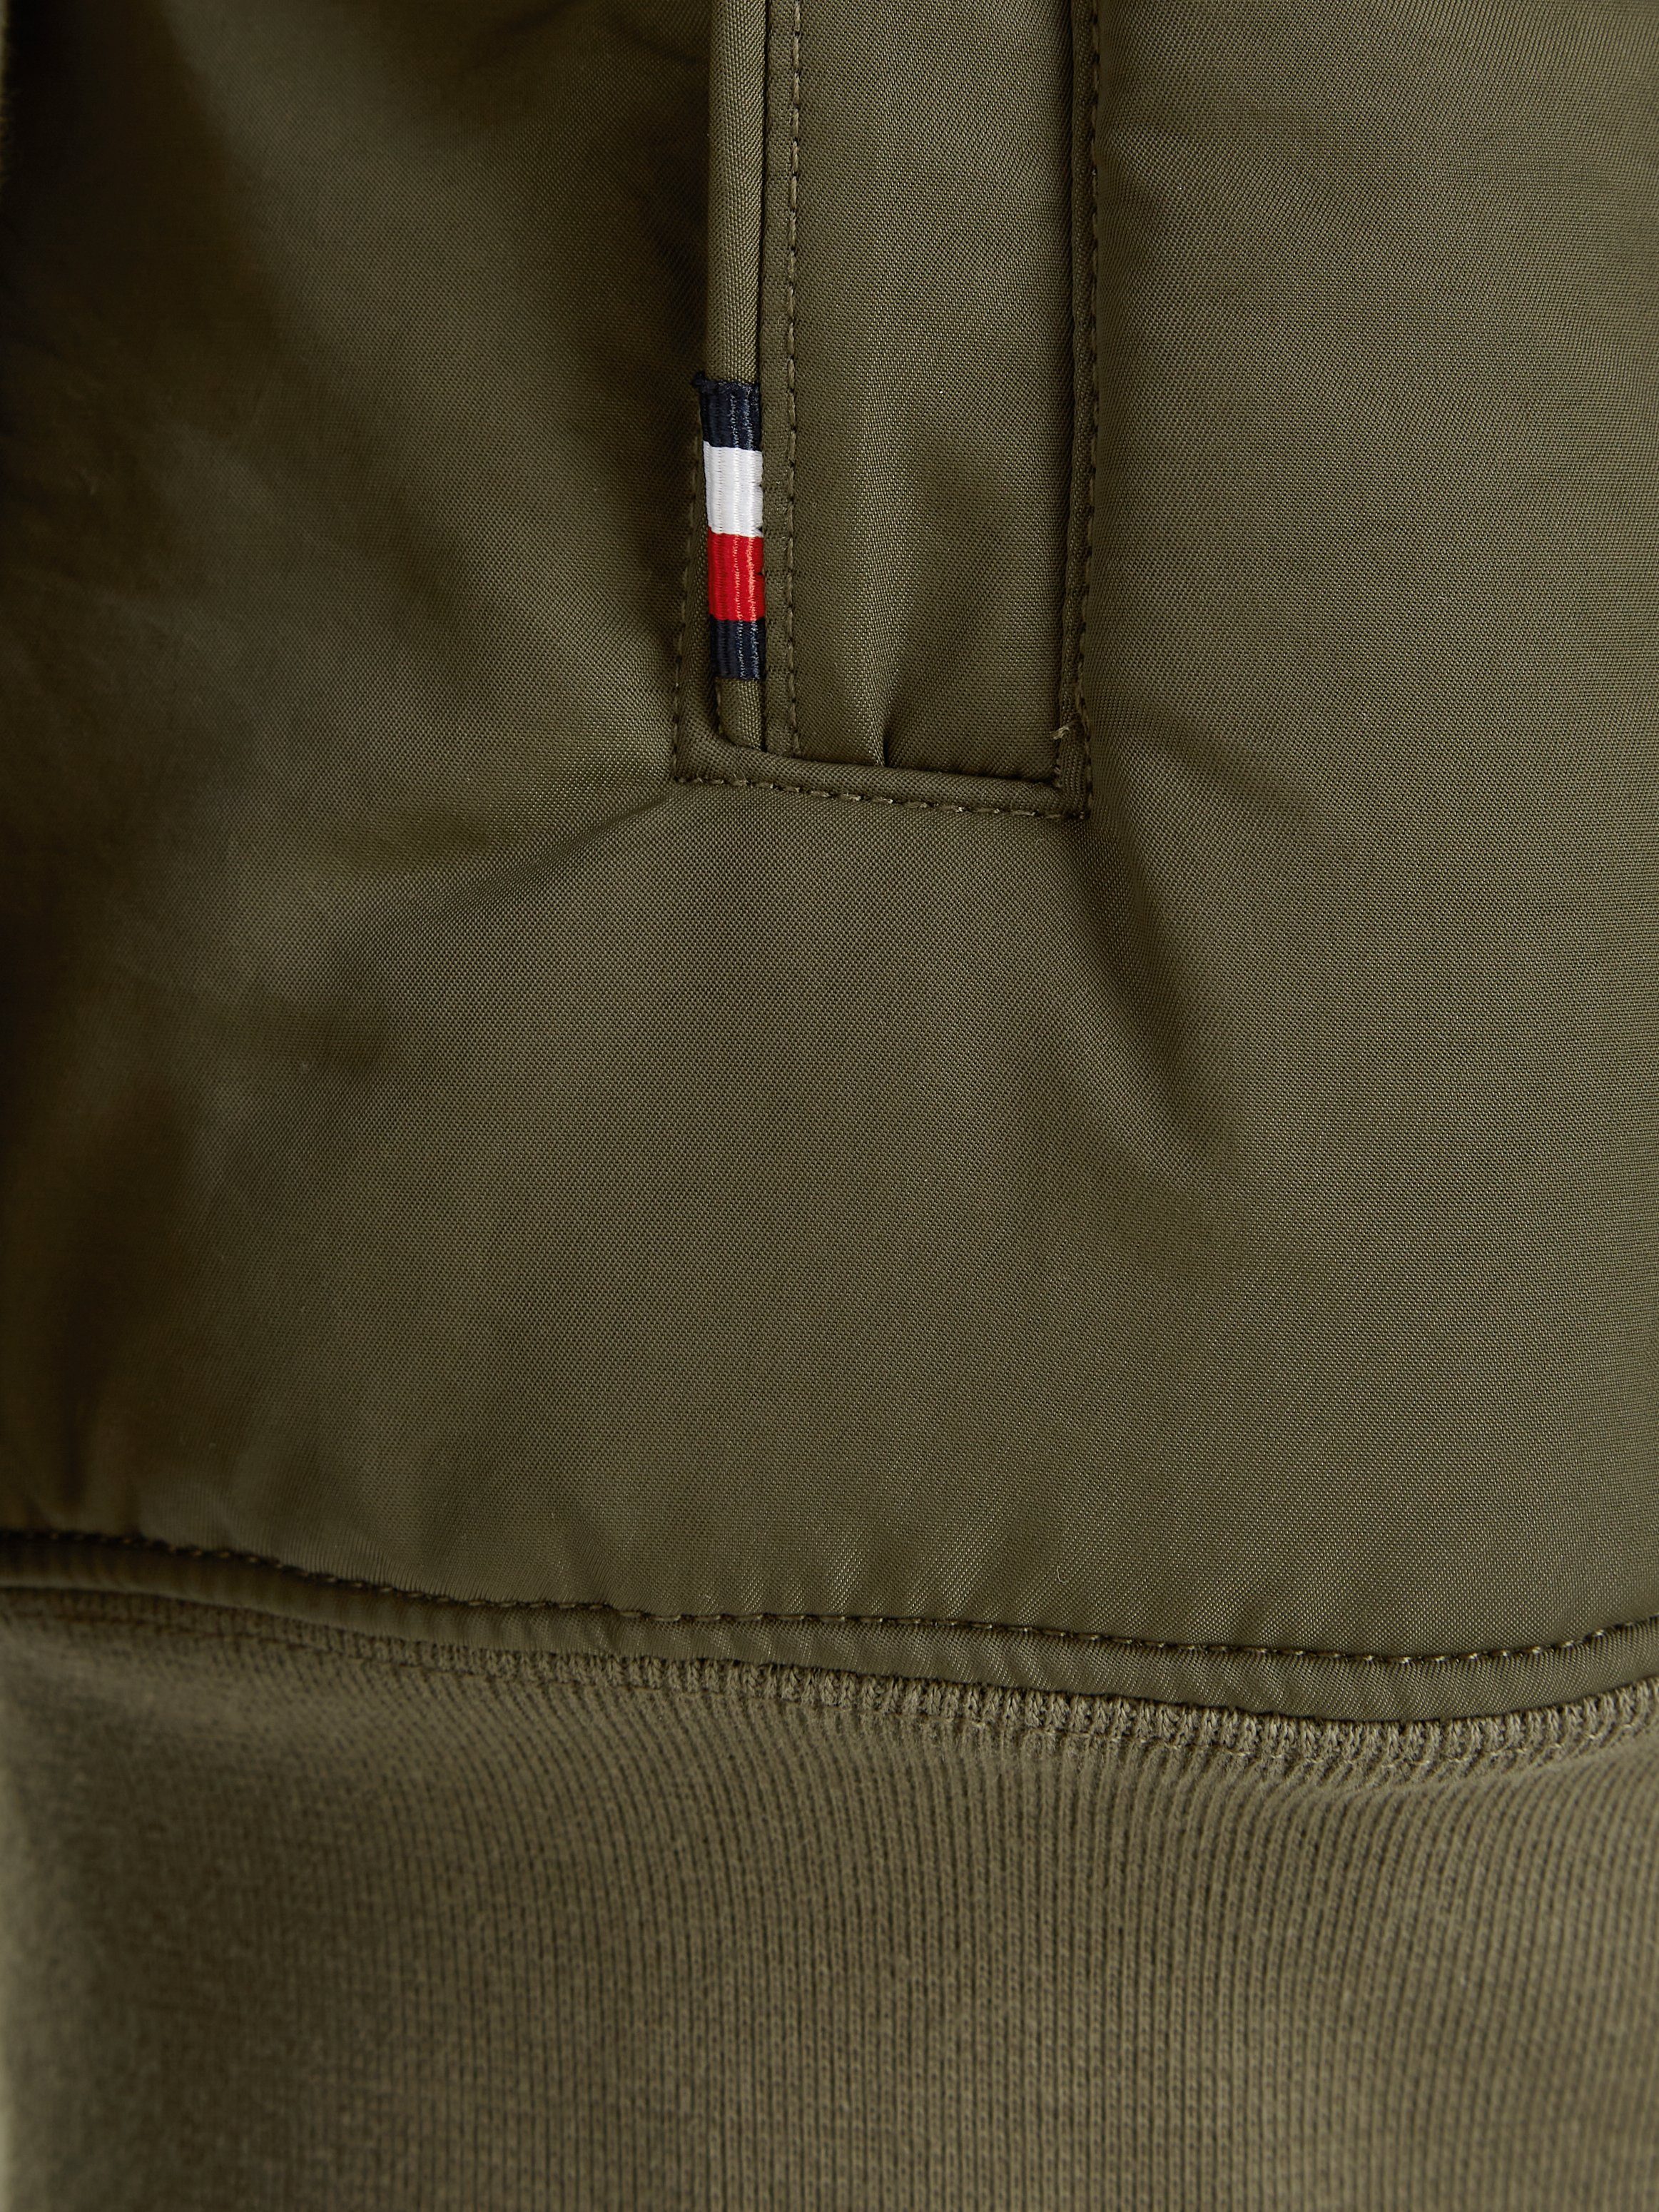 MEDIA Rücken COLLAR Sweatshirt Tommy Tommy mit Hilfiger-Branding Army MIX Hilfiger CLEAN am Green STAND